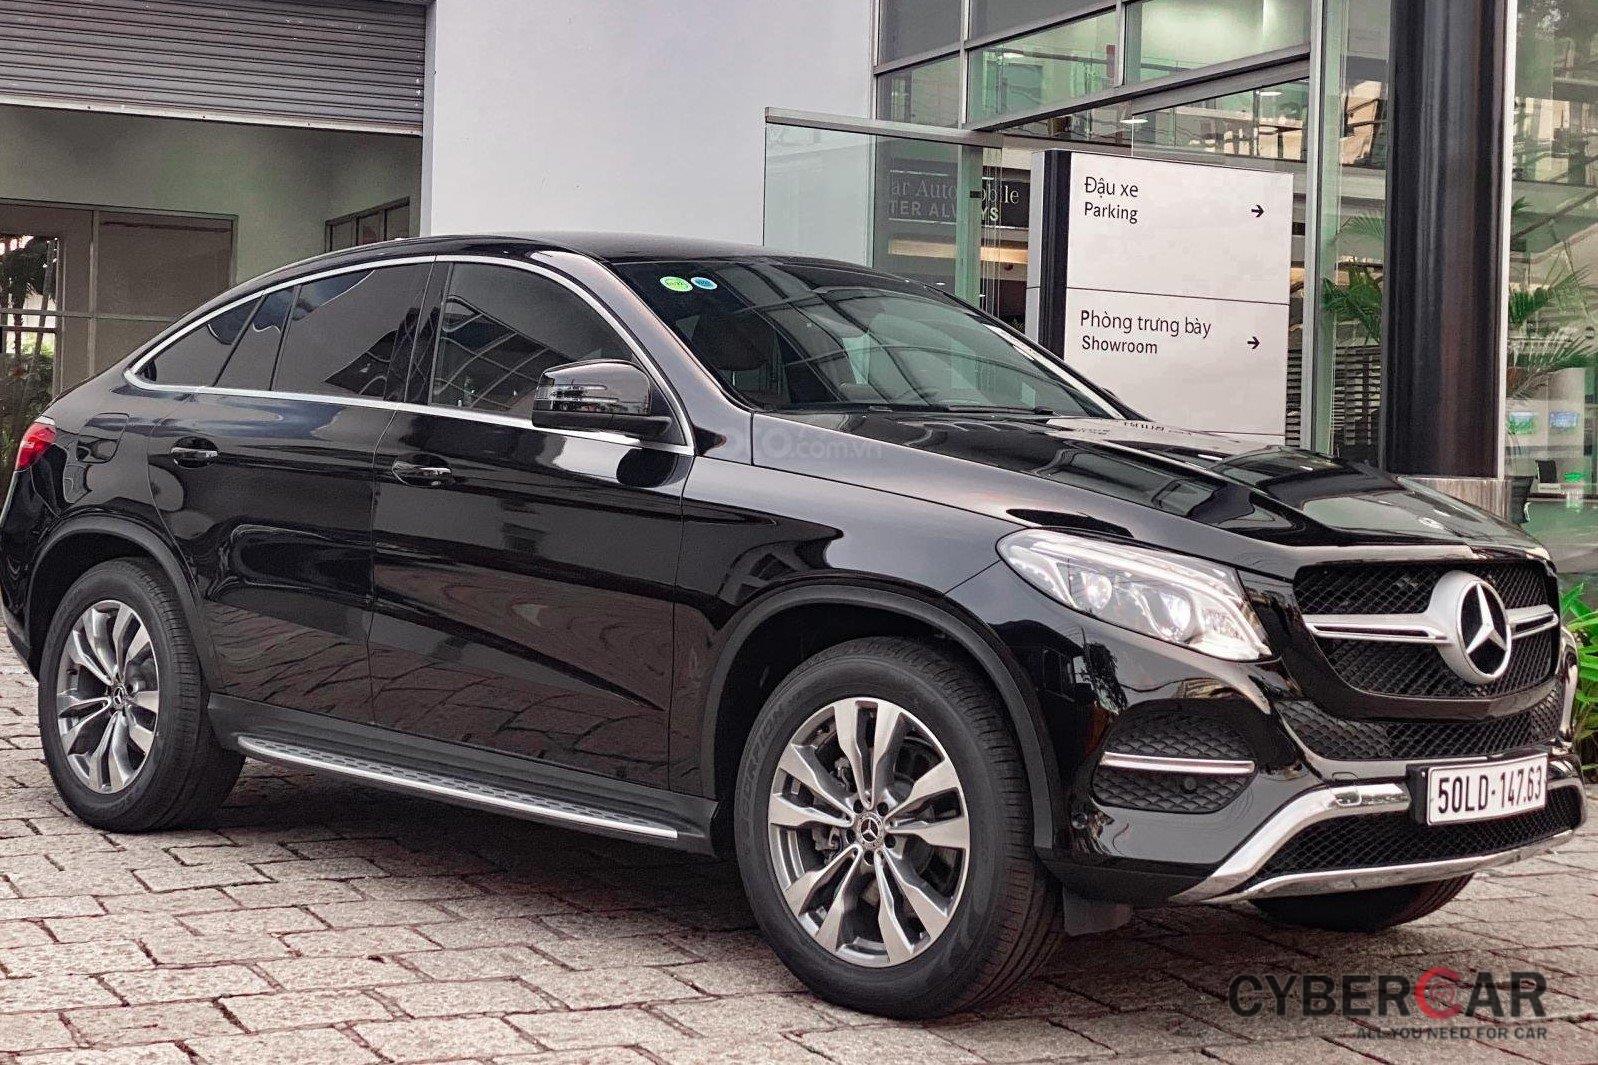 Mercedes GLE400 Coupe 2019 trưng bày rao bán rẻ hơn xe mới 500 triệu - All  you need for Car